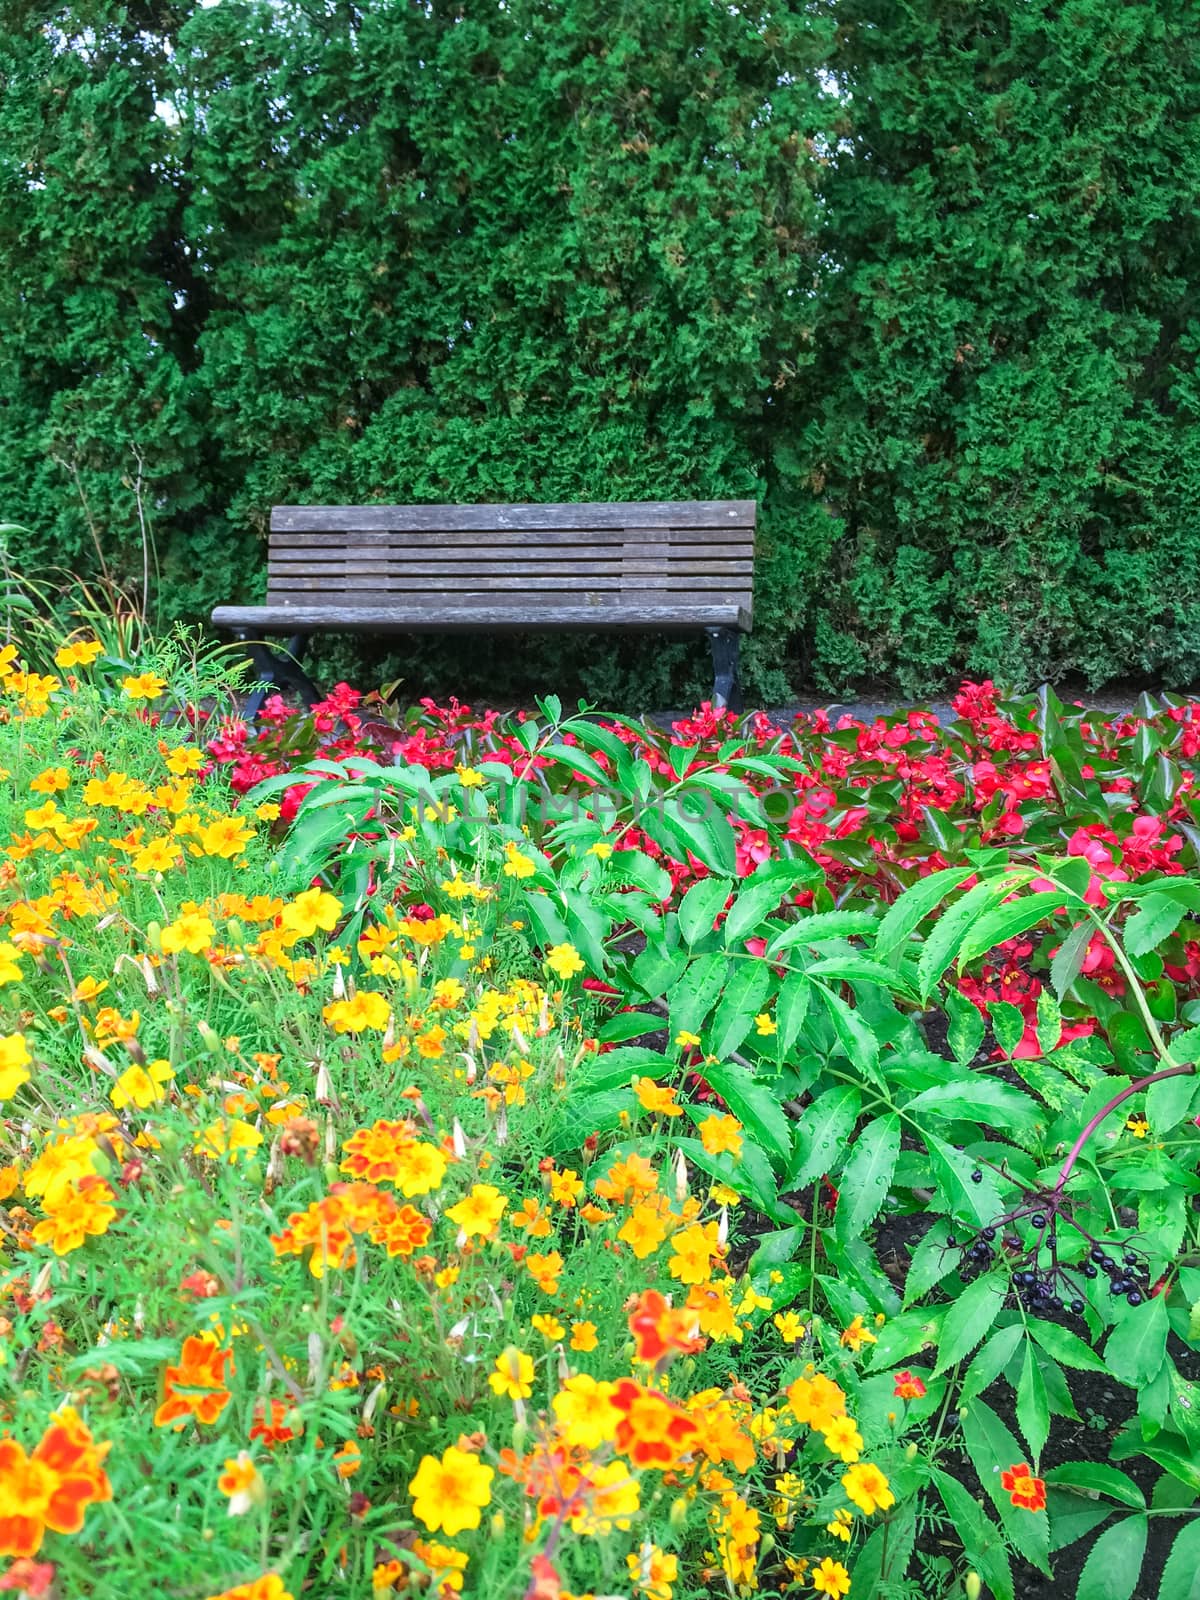 Wooden bench in beautiful blooming summer garden.